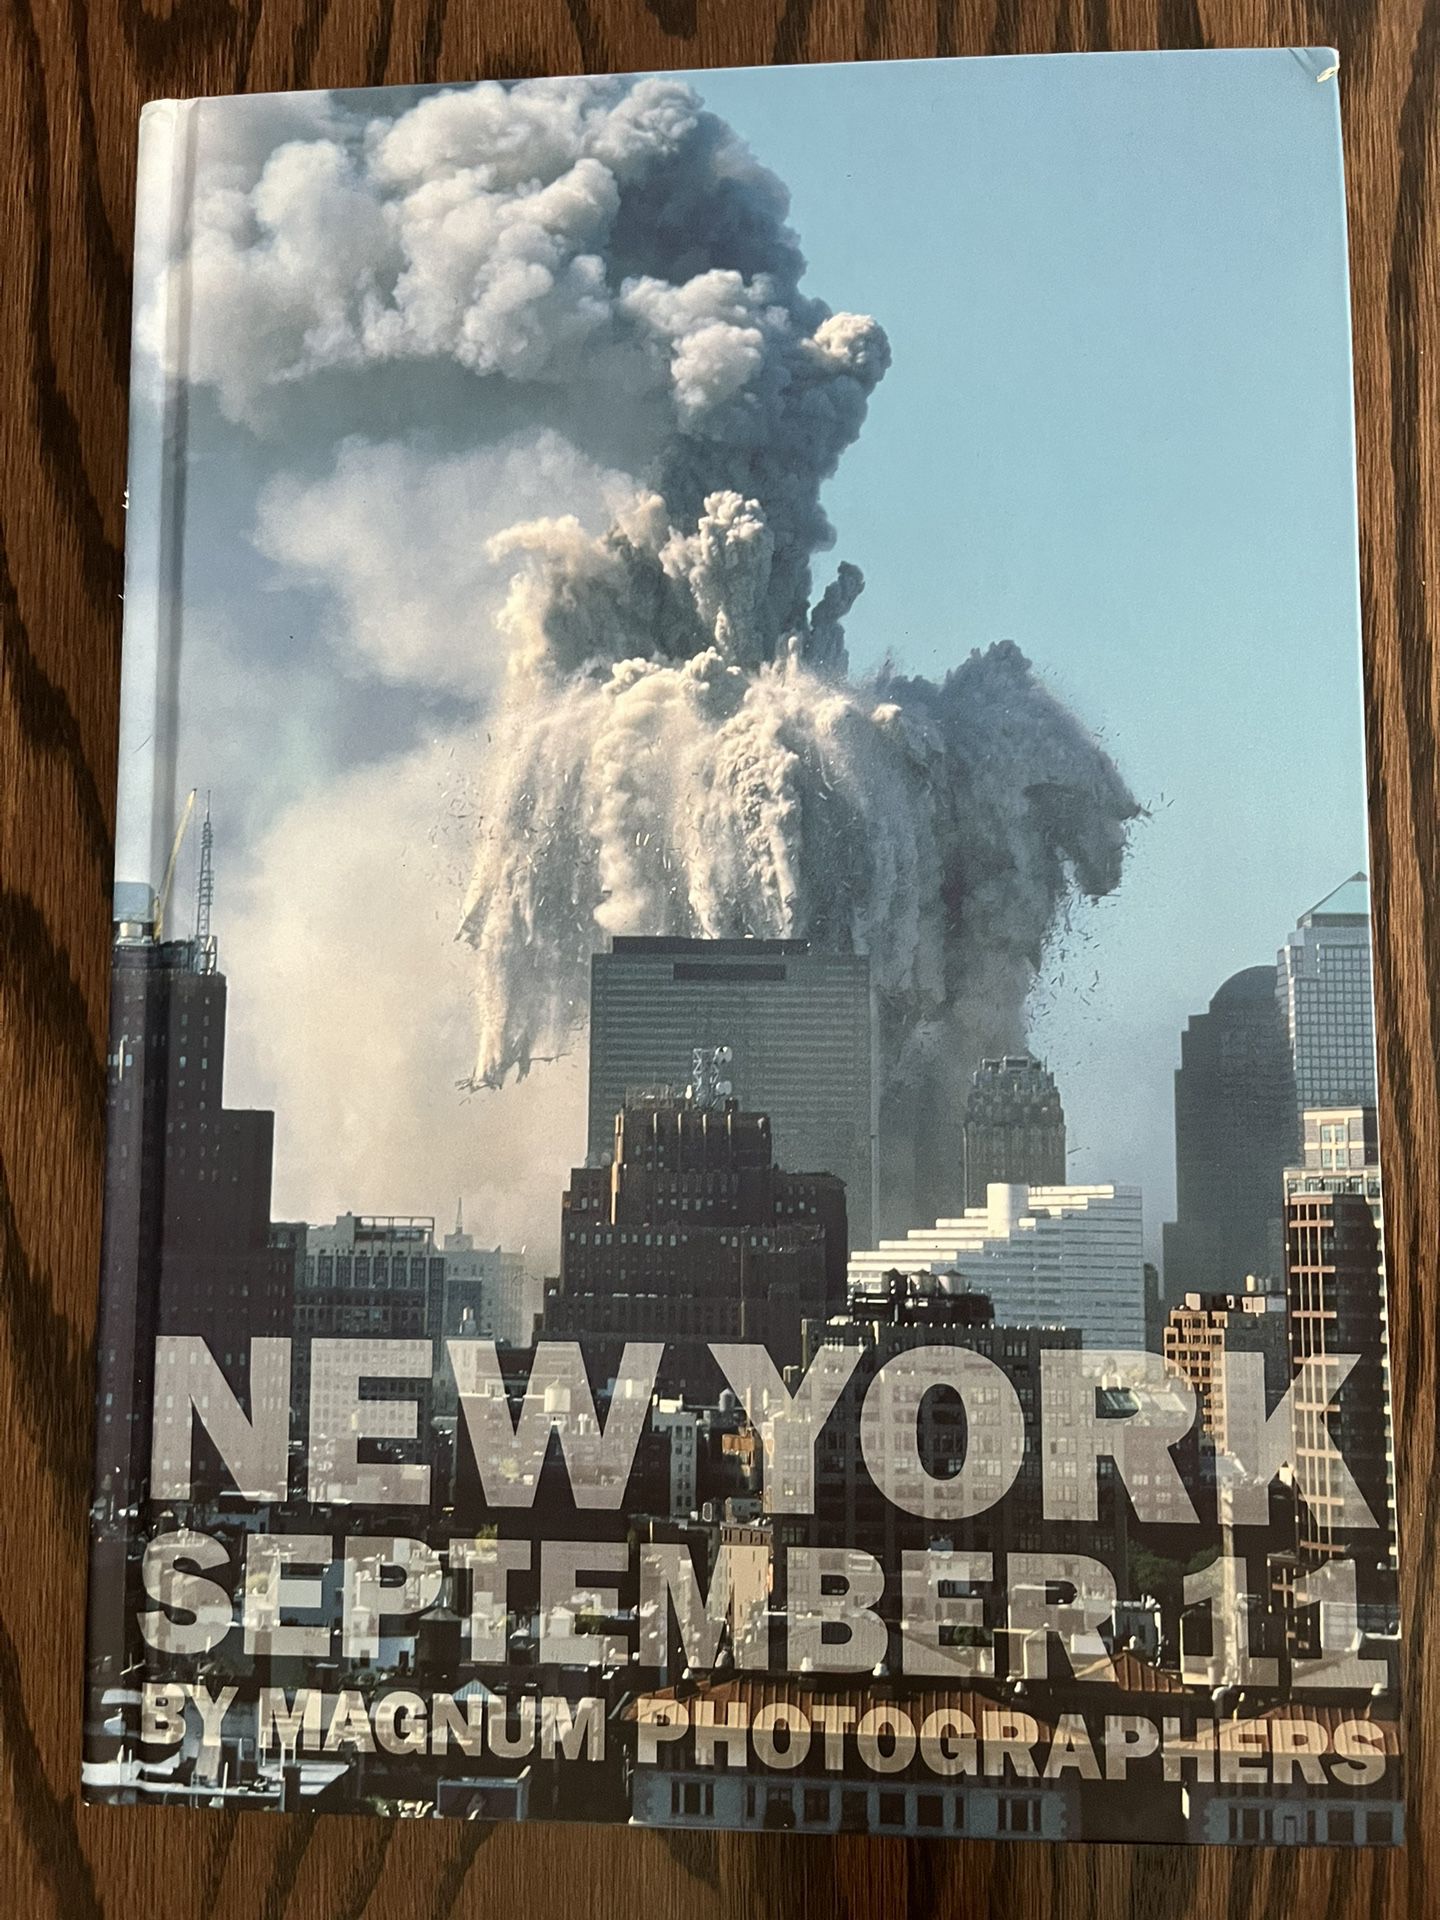 New York September 11 Book